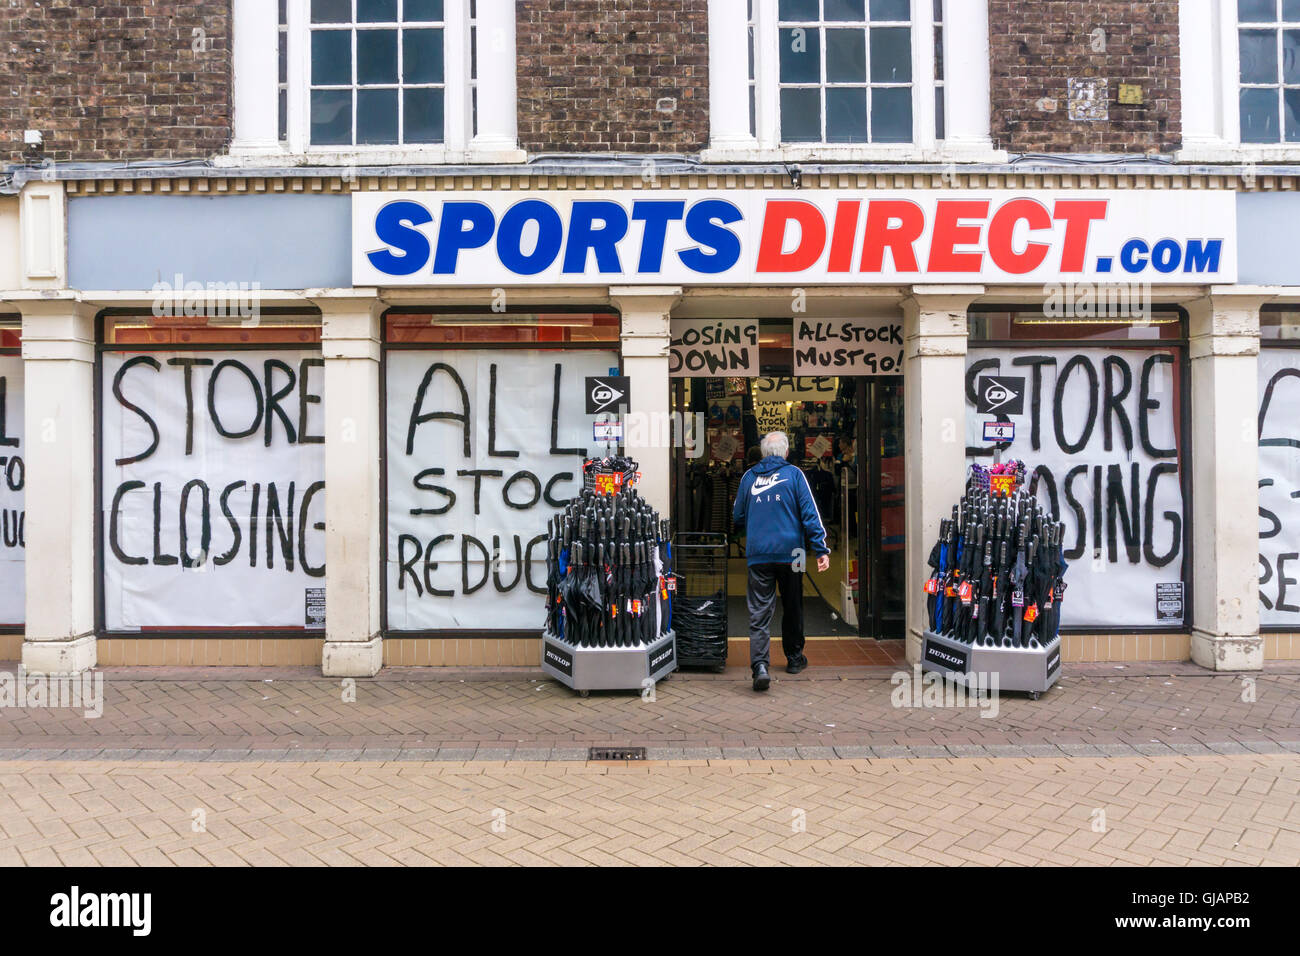 Chiudere la vendita con Store segni di chiusura in corrispondenza di un ramo di sport diretti o sportsdirect.com un negozio di abbigliamento sportivo. Foto Stock